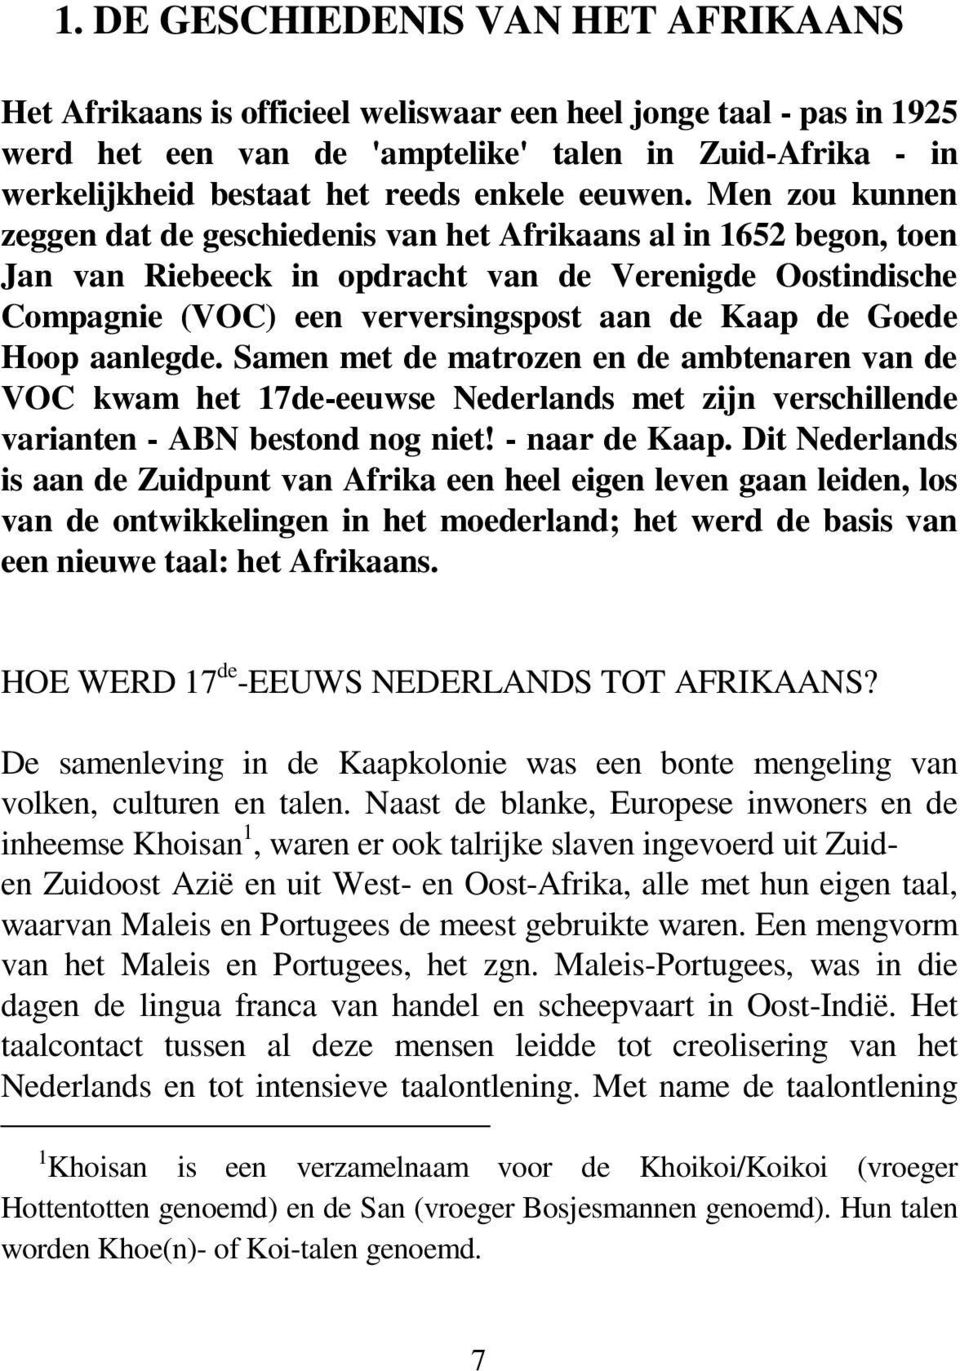 Men zou kunnen zeggen dat de geschiedenis van het Afrikaans al in 1652 begon, toen Jan van Riebeeck in opdracht van de Verenigde Oostindische Compagnie (VOC) een verversingspost aan de Kaap de Goede